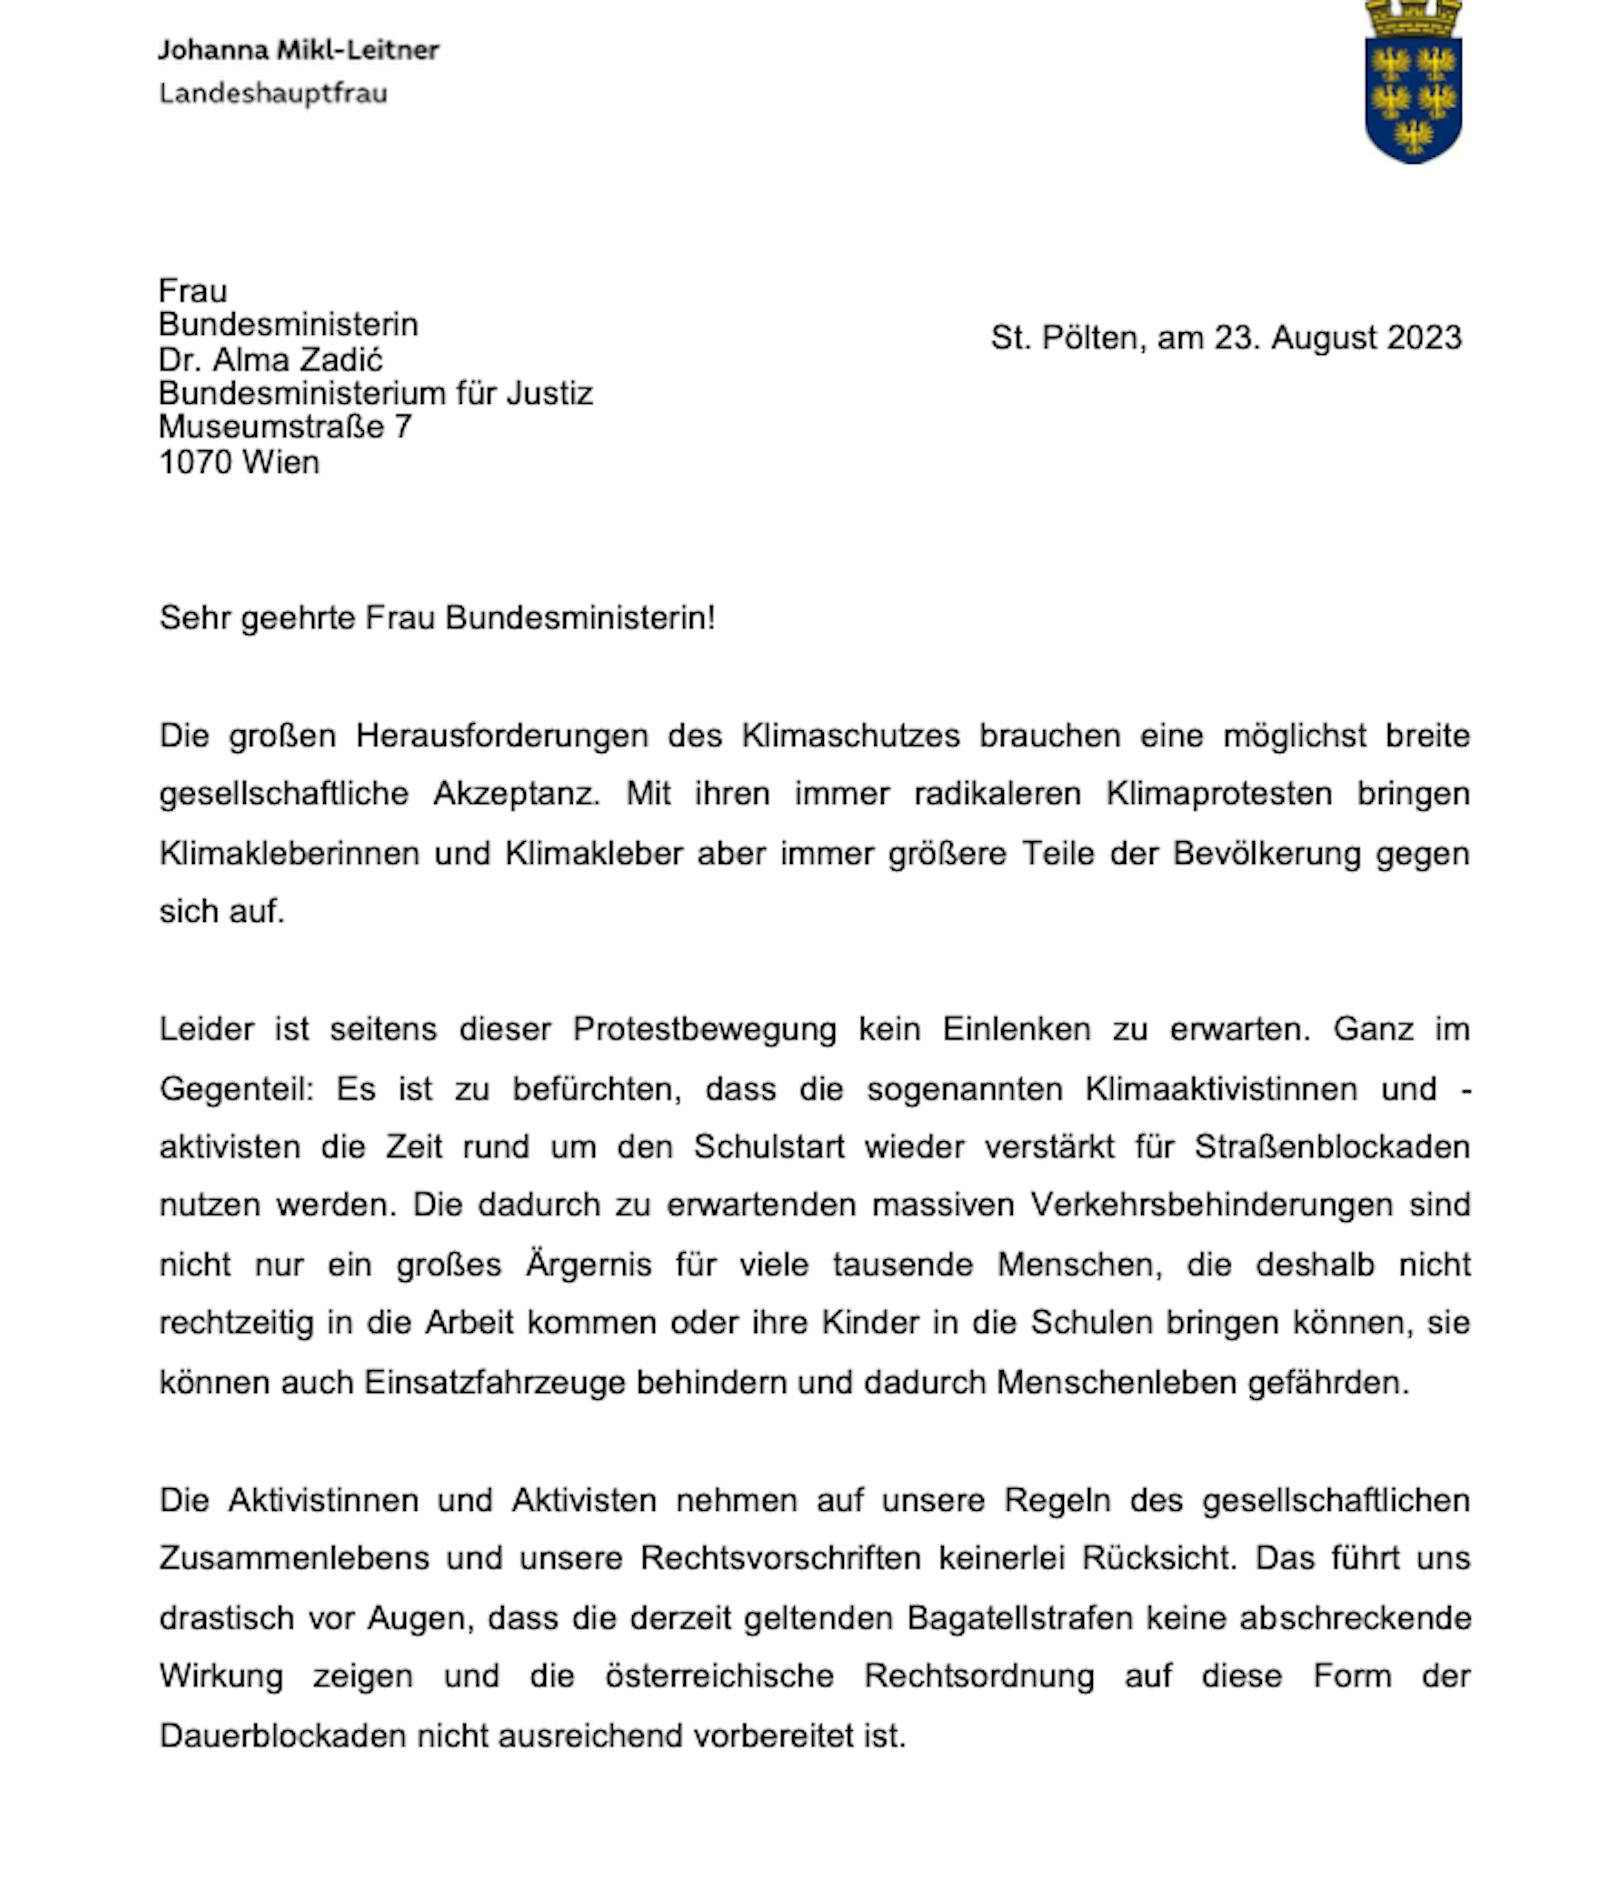 Der Brief der VPNÖ-Chefin im Wortlaut